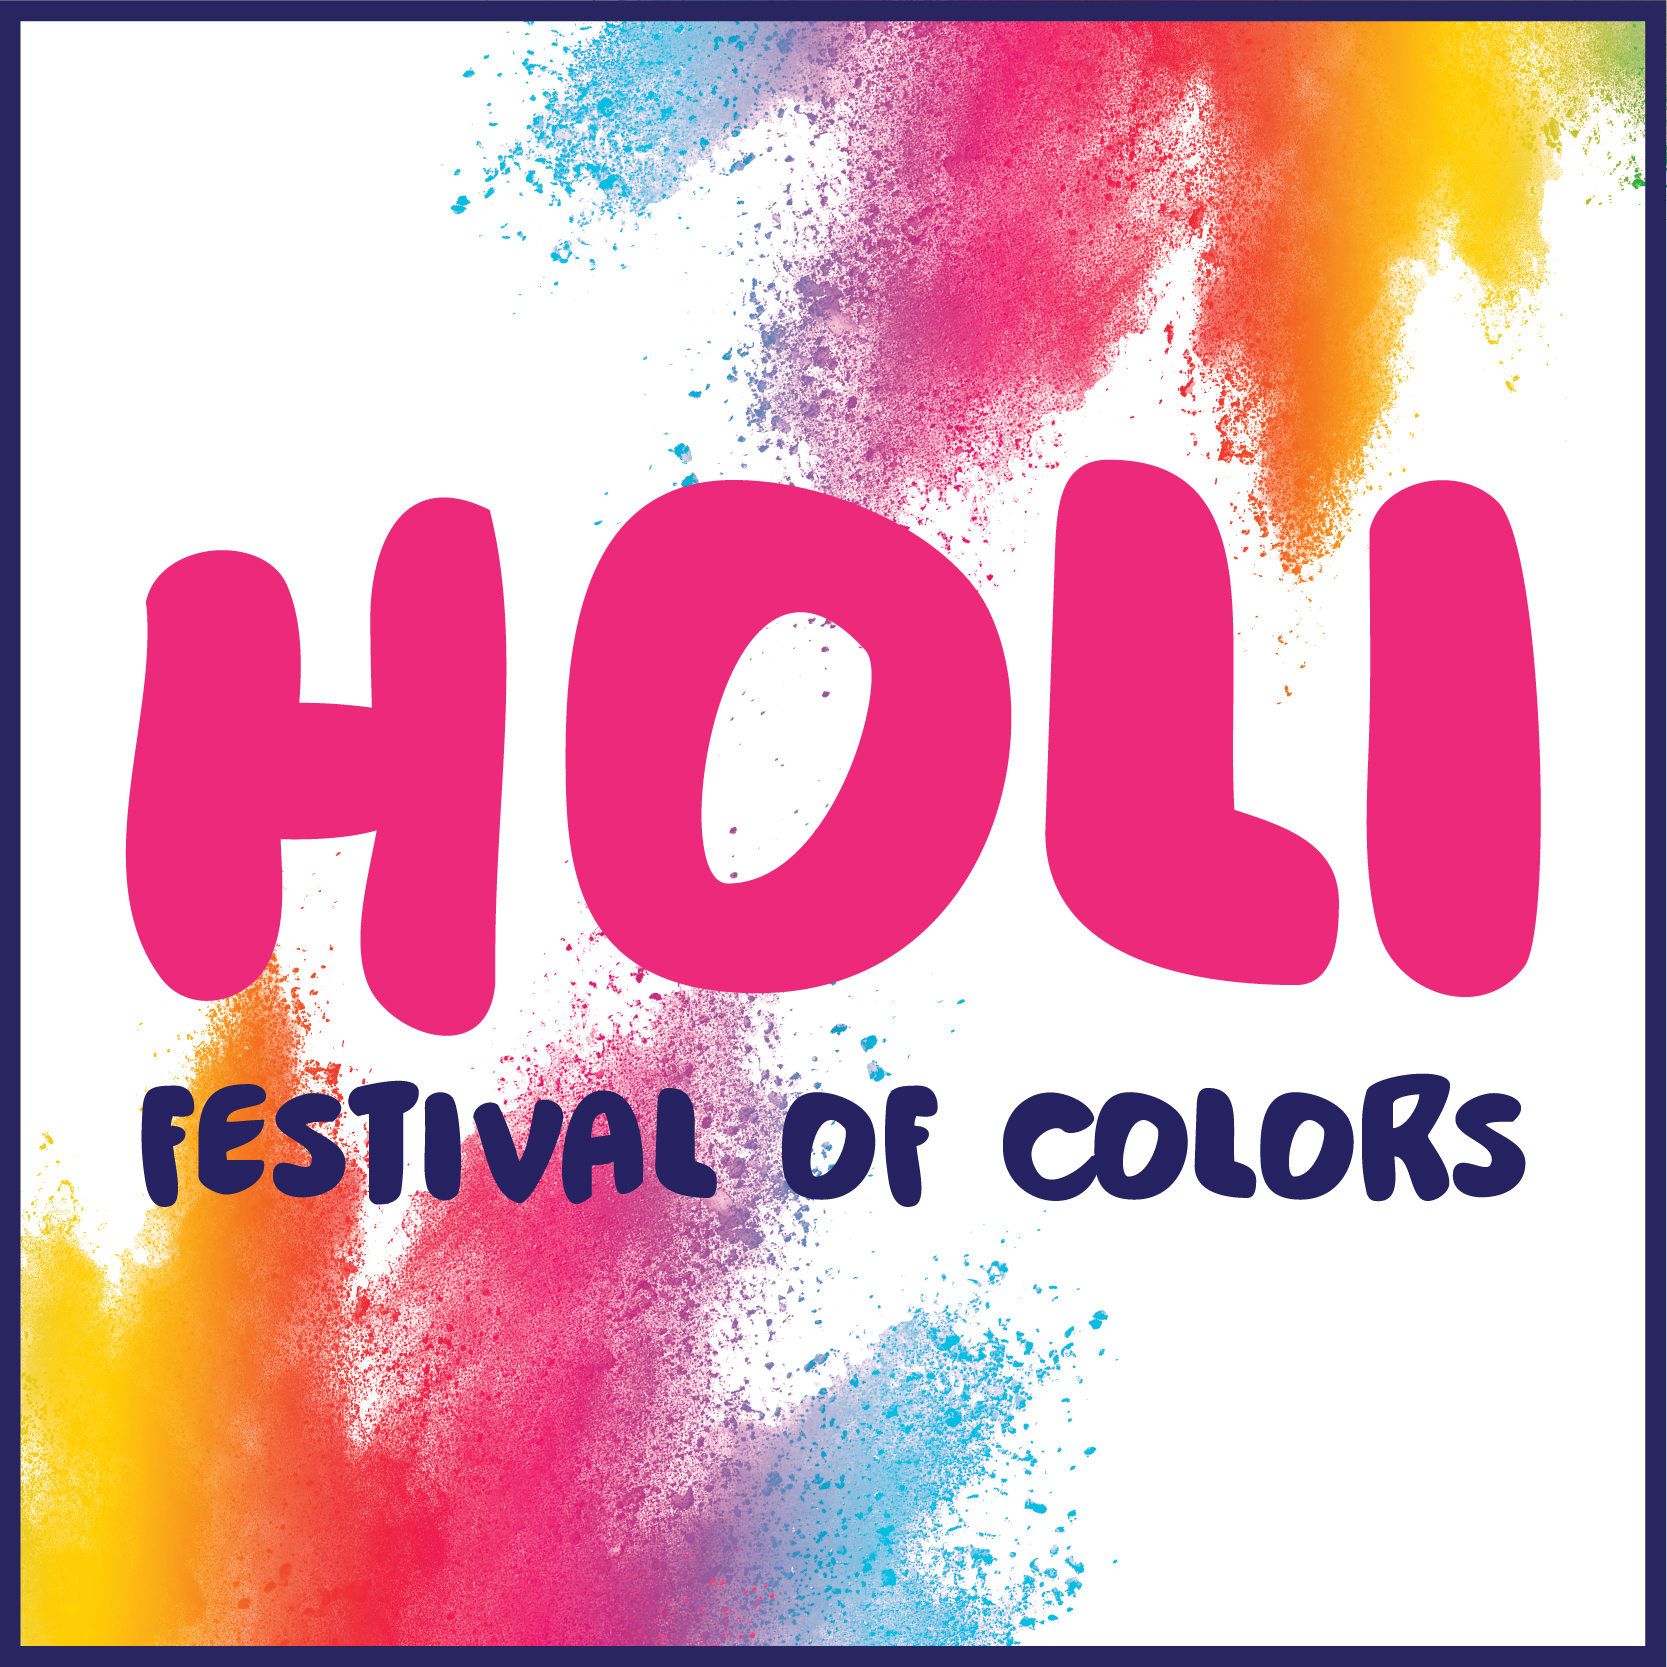 India’s Holi Festival of Color